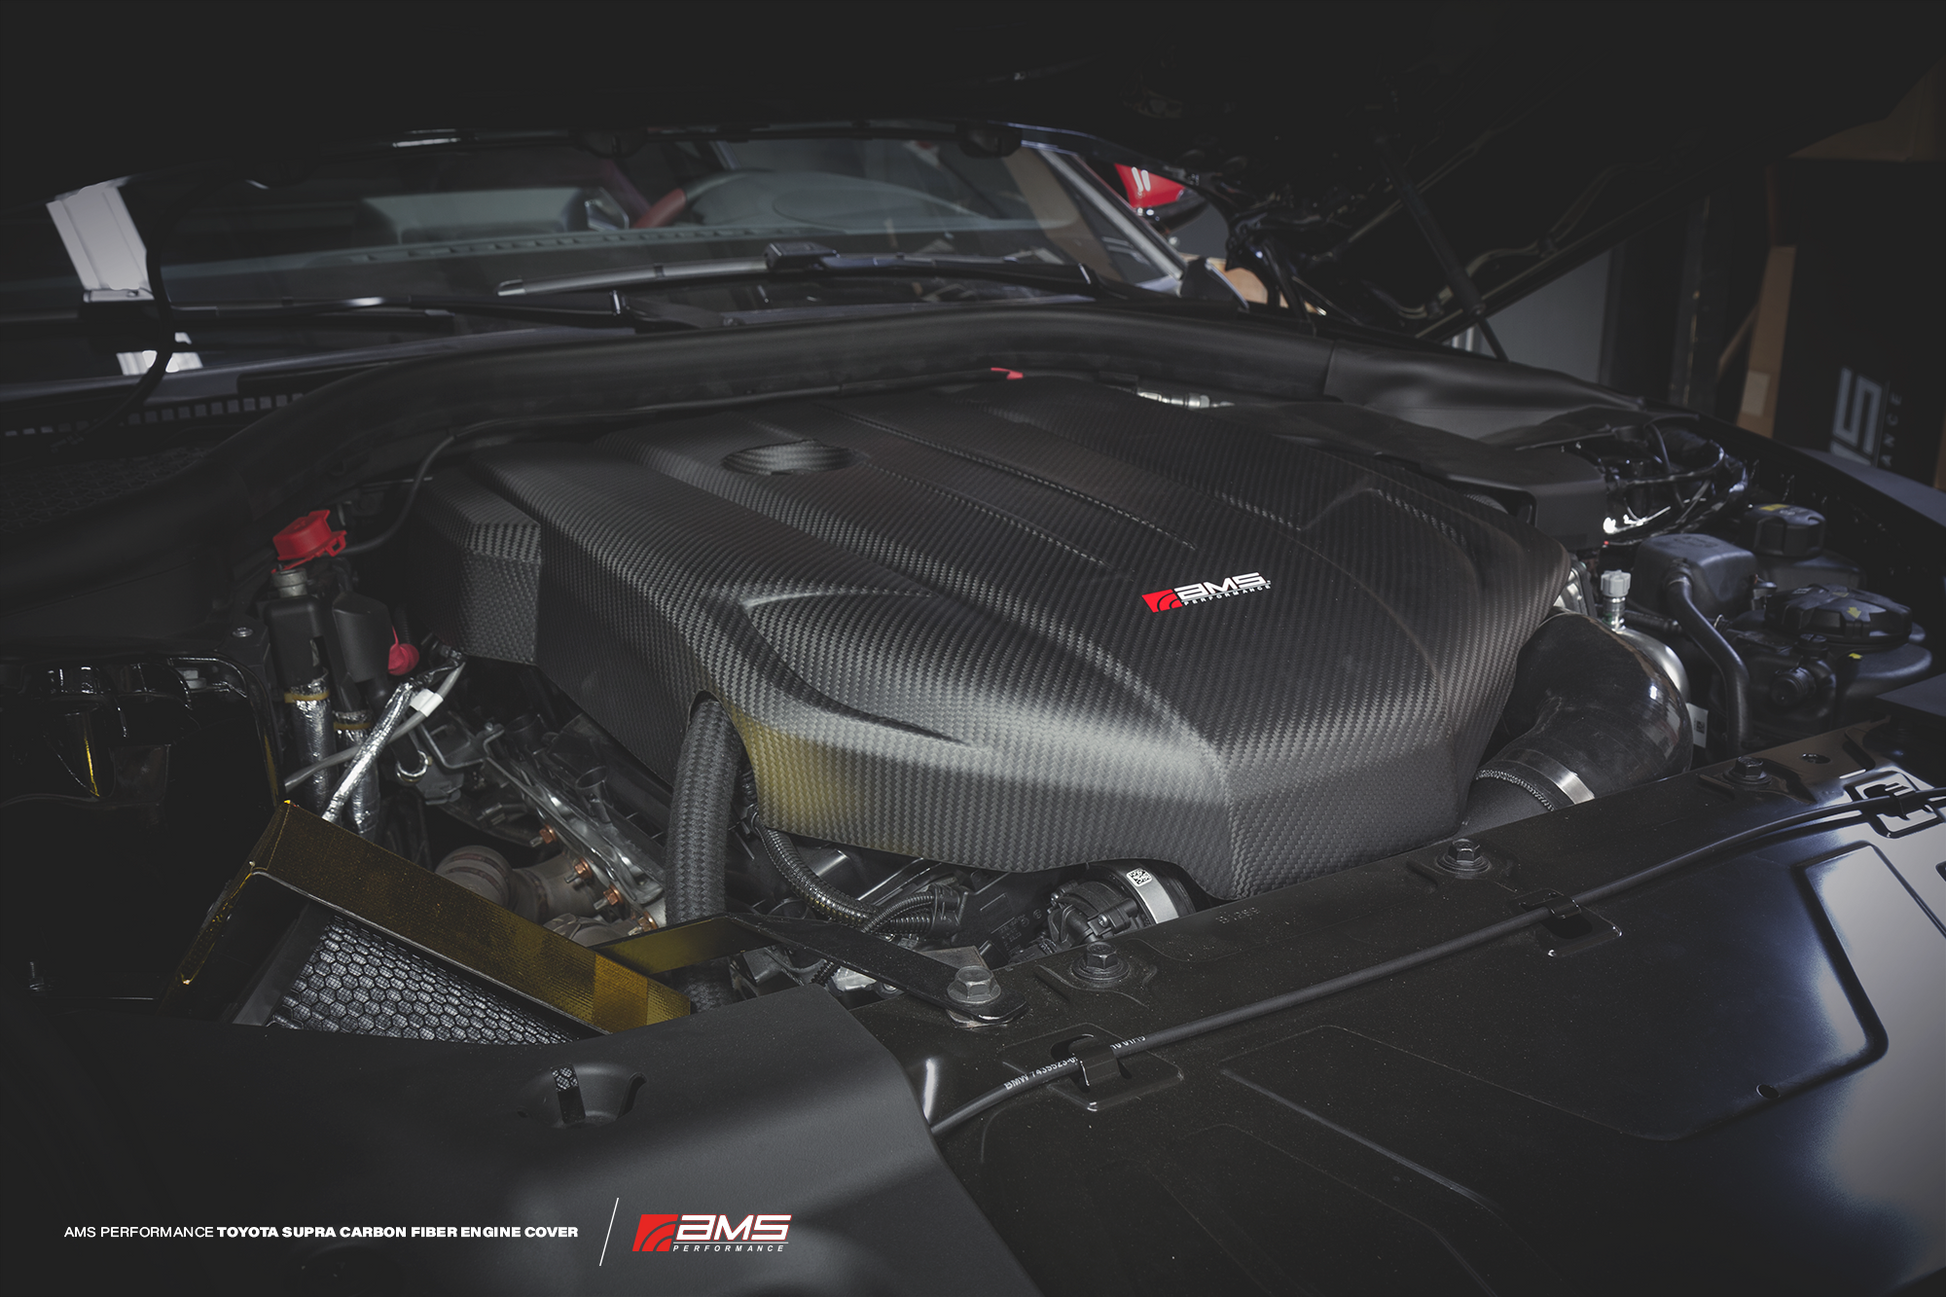 AMS Performance 2020+ Toyota GR Supra Carbon Fiber Engine Cover for the MK5 Toyota Supra GR A90 MKV  - Matte Carbon Installed in Engine Bay